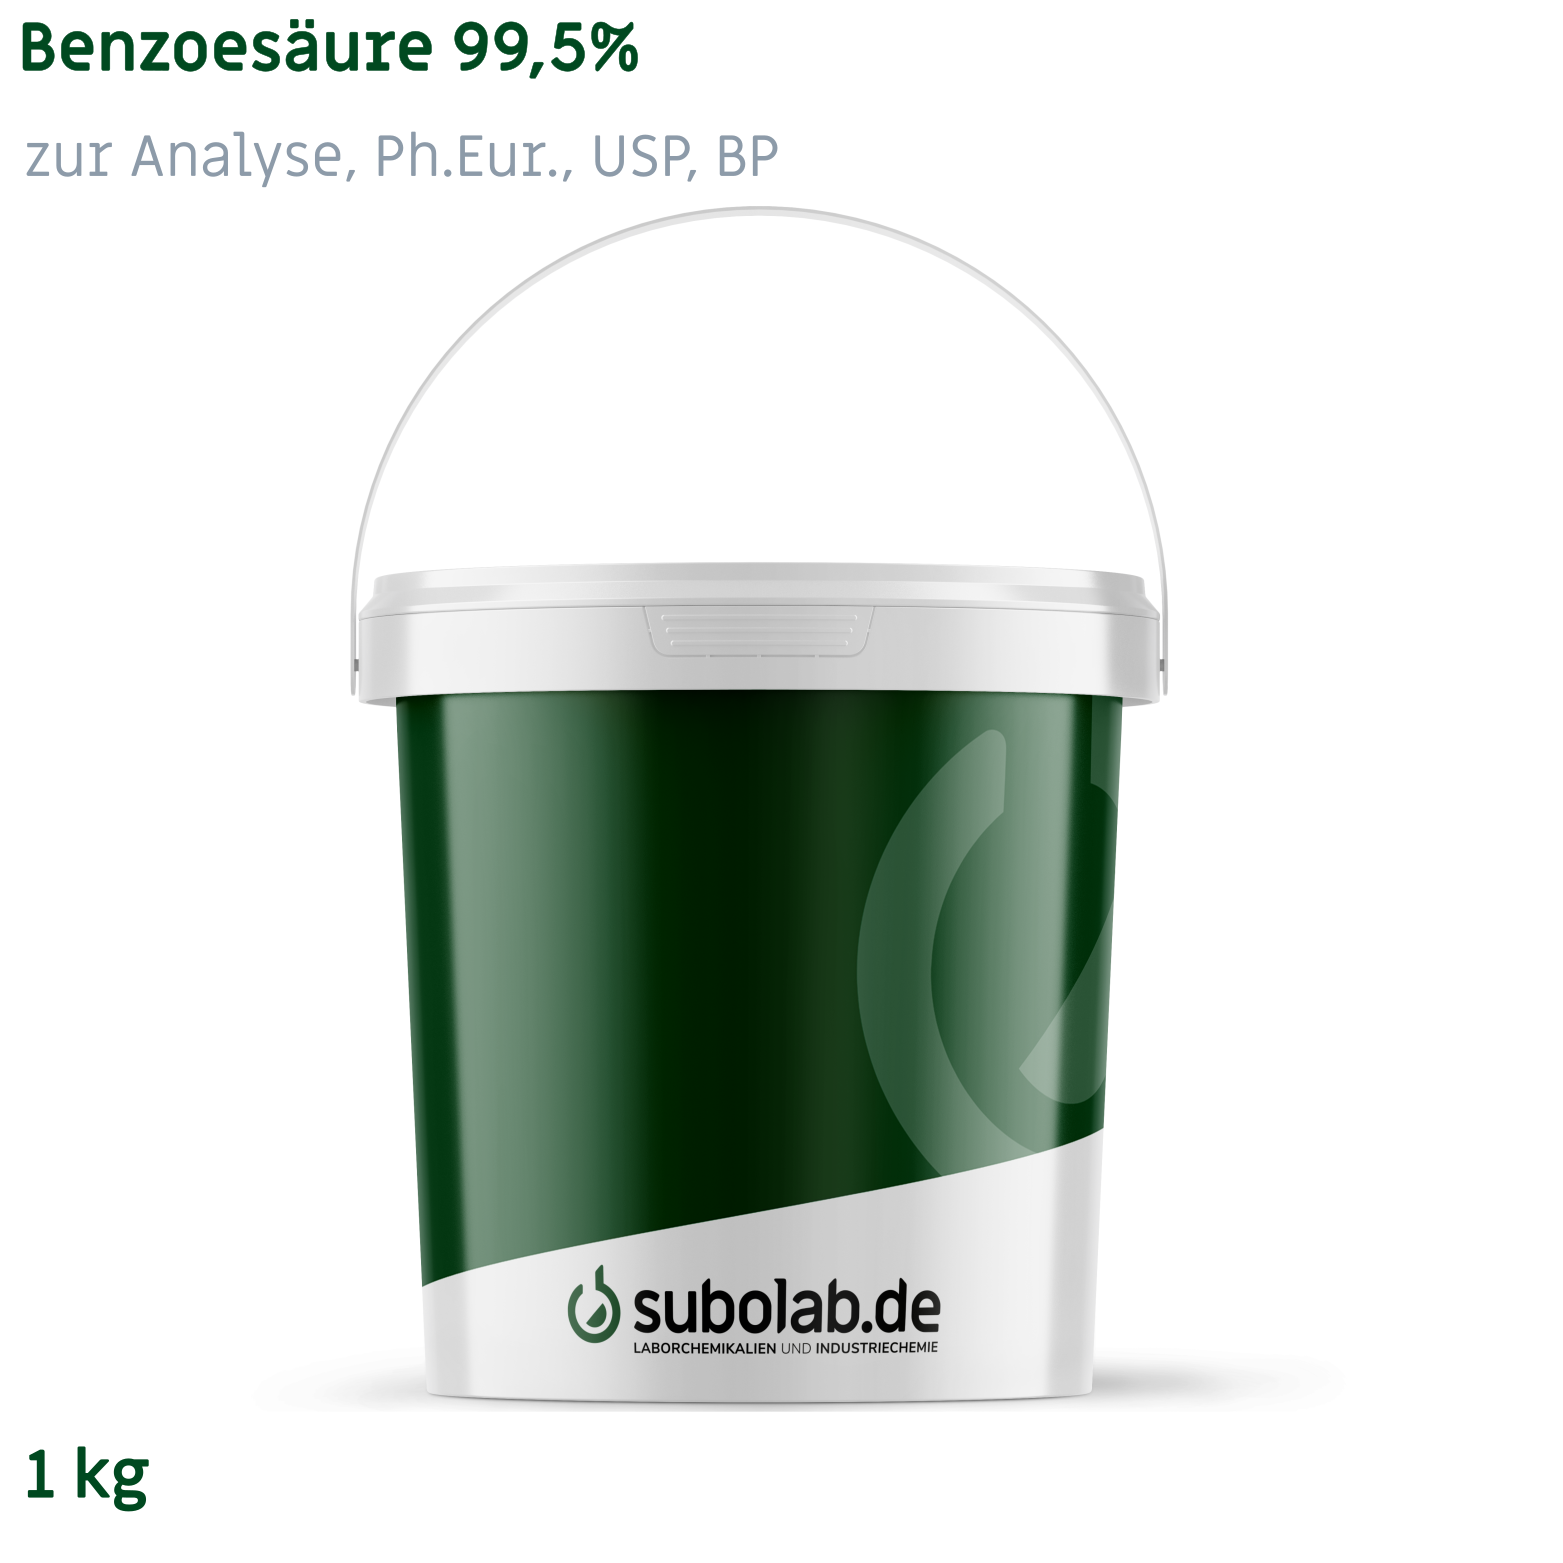 Bild von Benzoesäure 99,5% zur Analyse, Ph.Eur., USP, BP (1 kg)